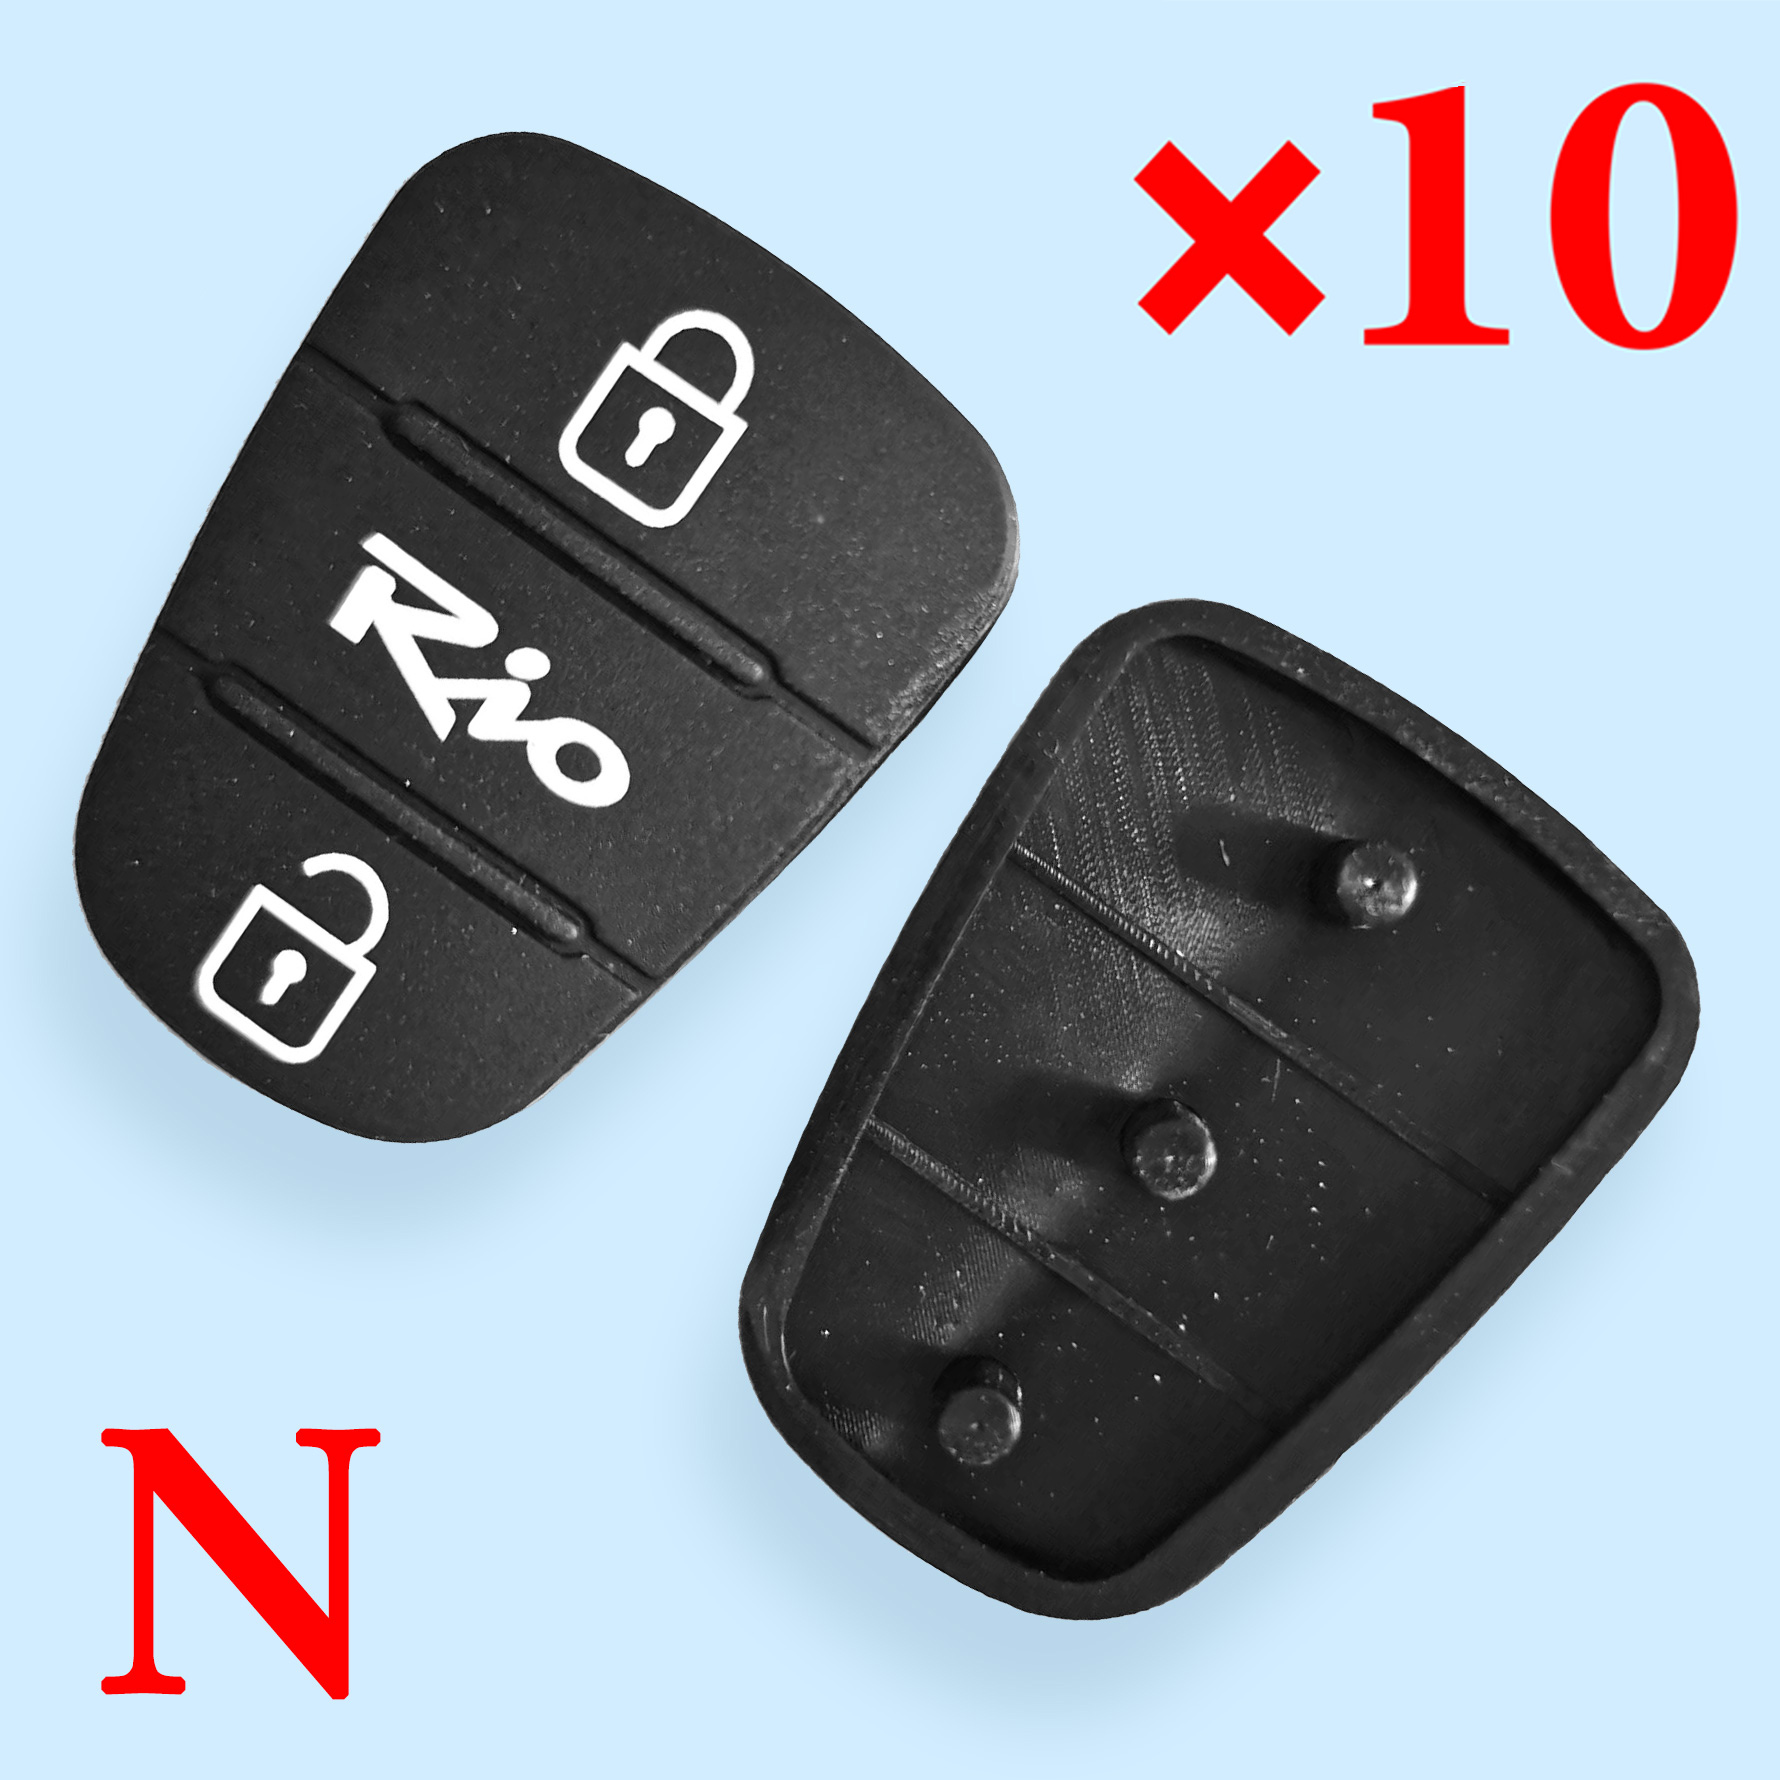 3 button Remote Keys Rubber Button Pad for Kia Rio 10 pcs